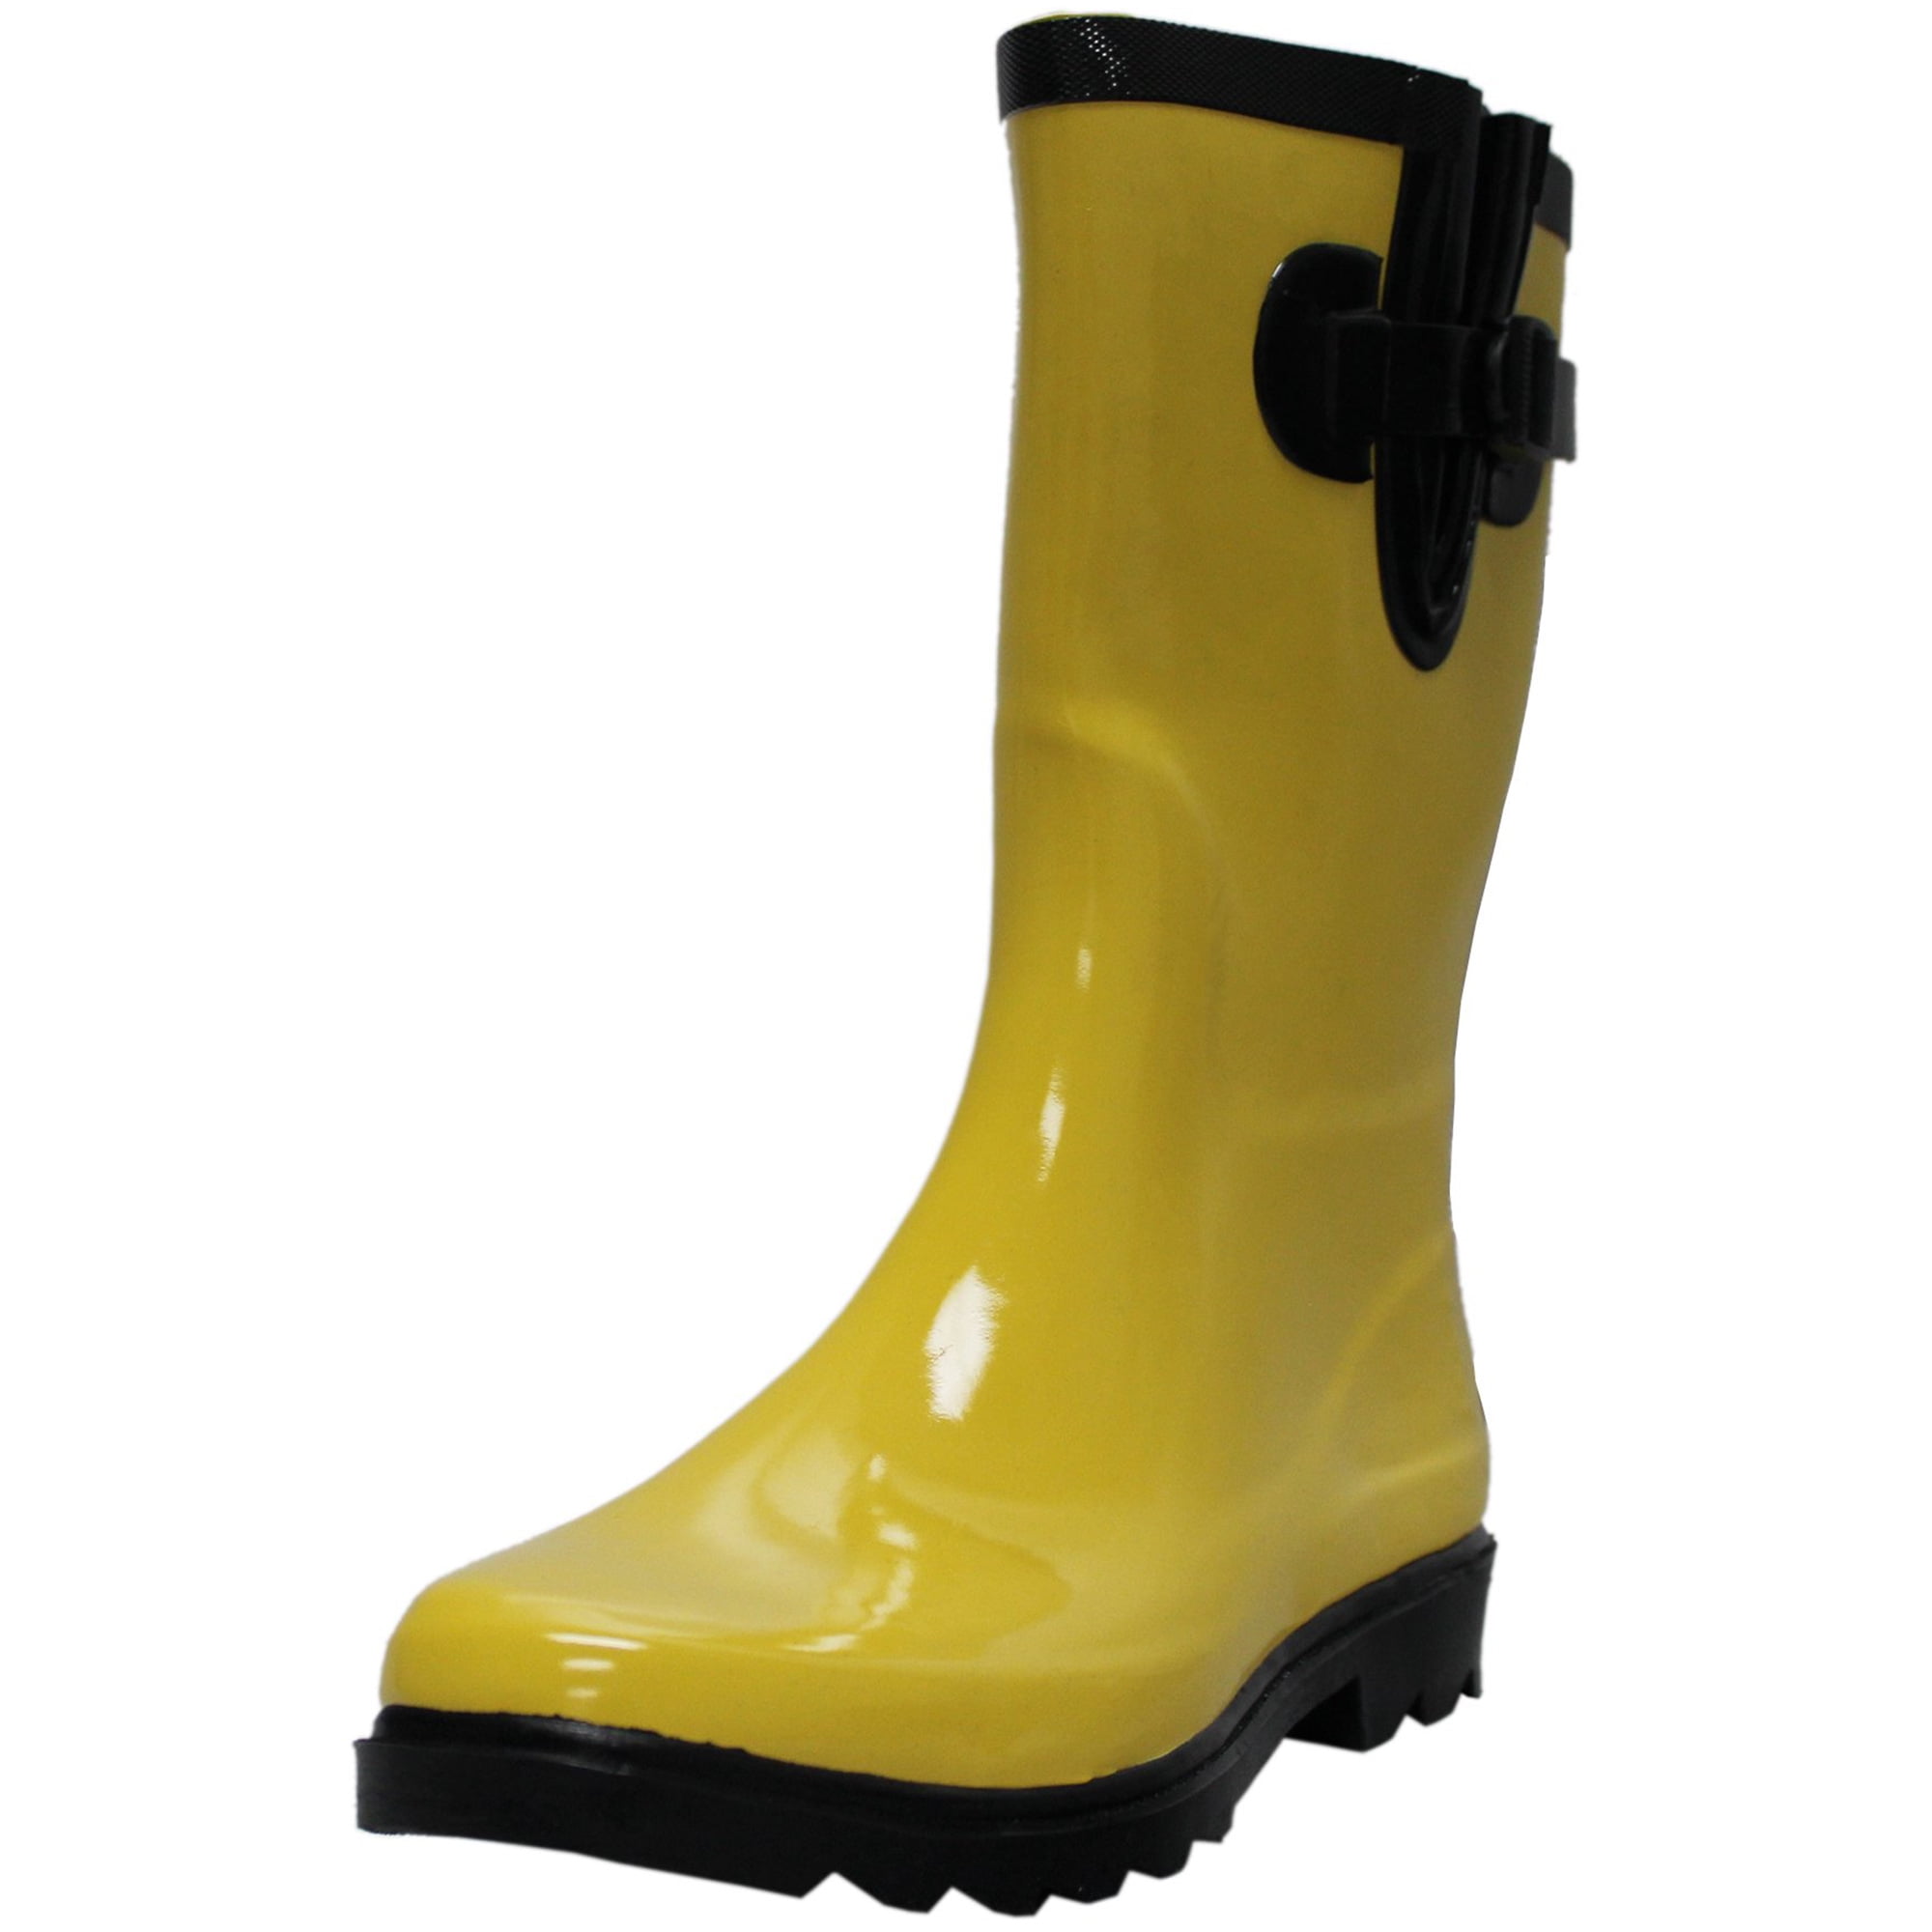 Tanleewa Adjustable Rubber Rain Boots for Women Waterproof Garden Boots ...